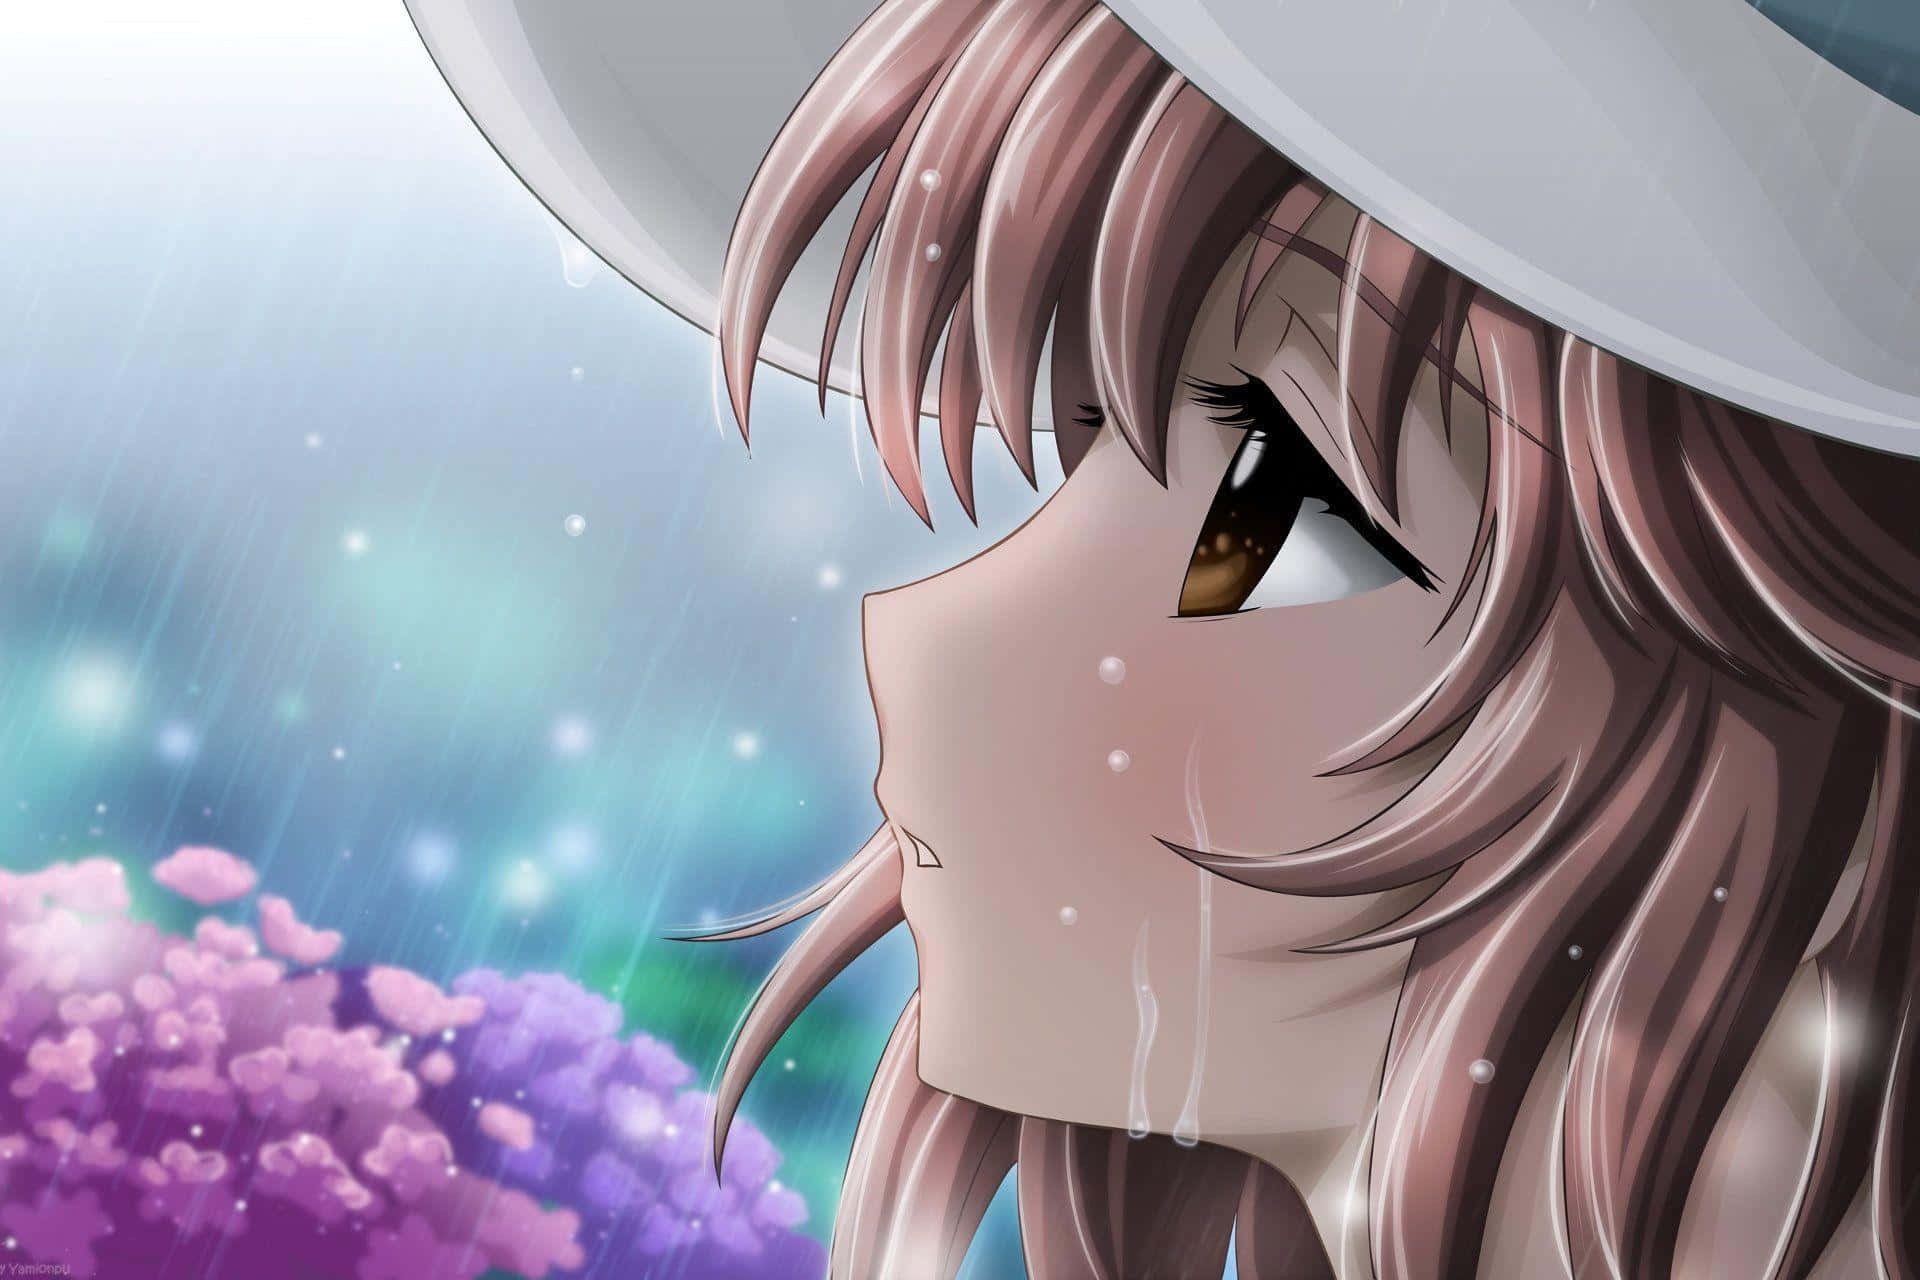 Følelseraf Tristhed Hos Anime-karakterer